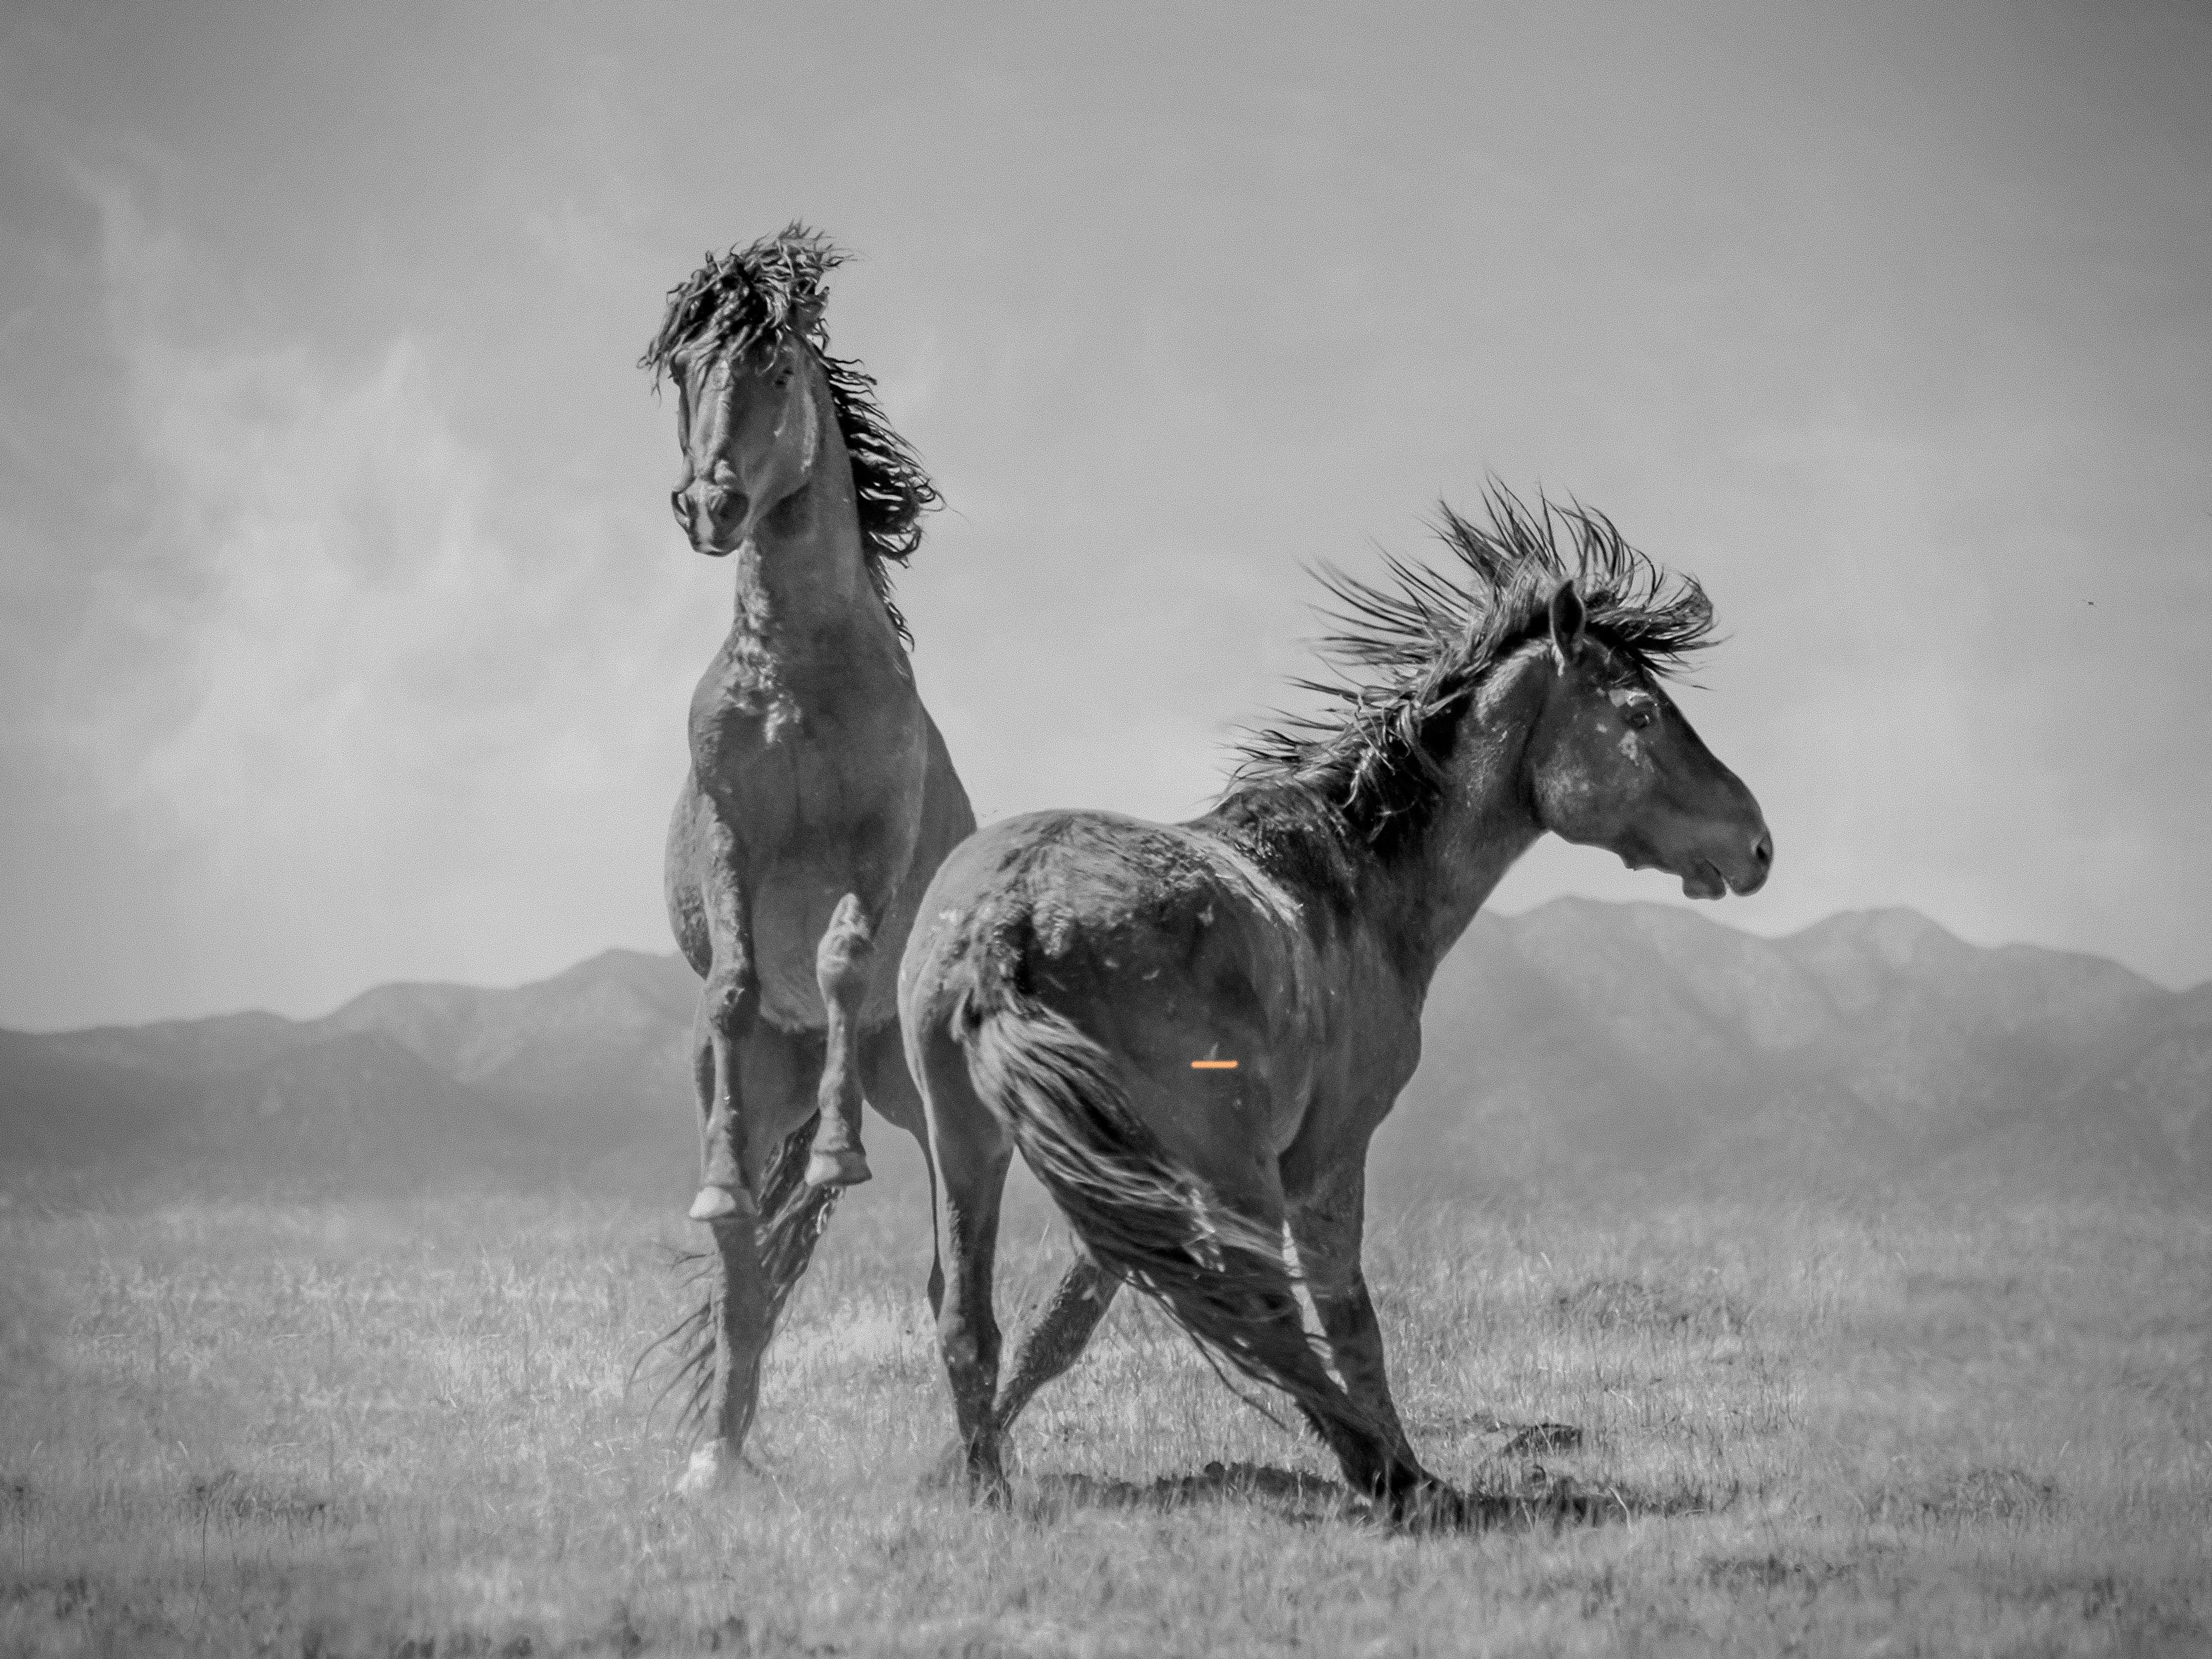 Black and White Photograph Shane Russeck - "Wonder Horses" 40x50 - Photographie en noir et blanc, chevaux sauvages moutons non signés